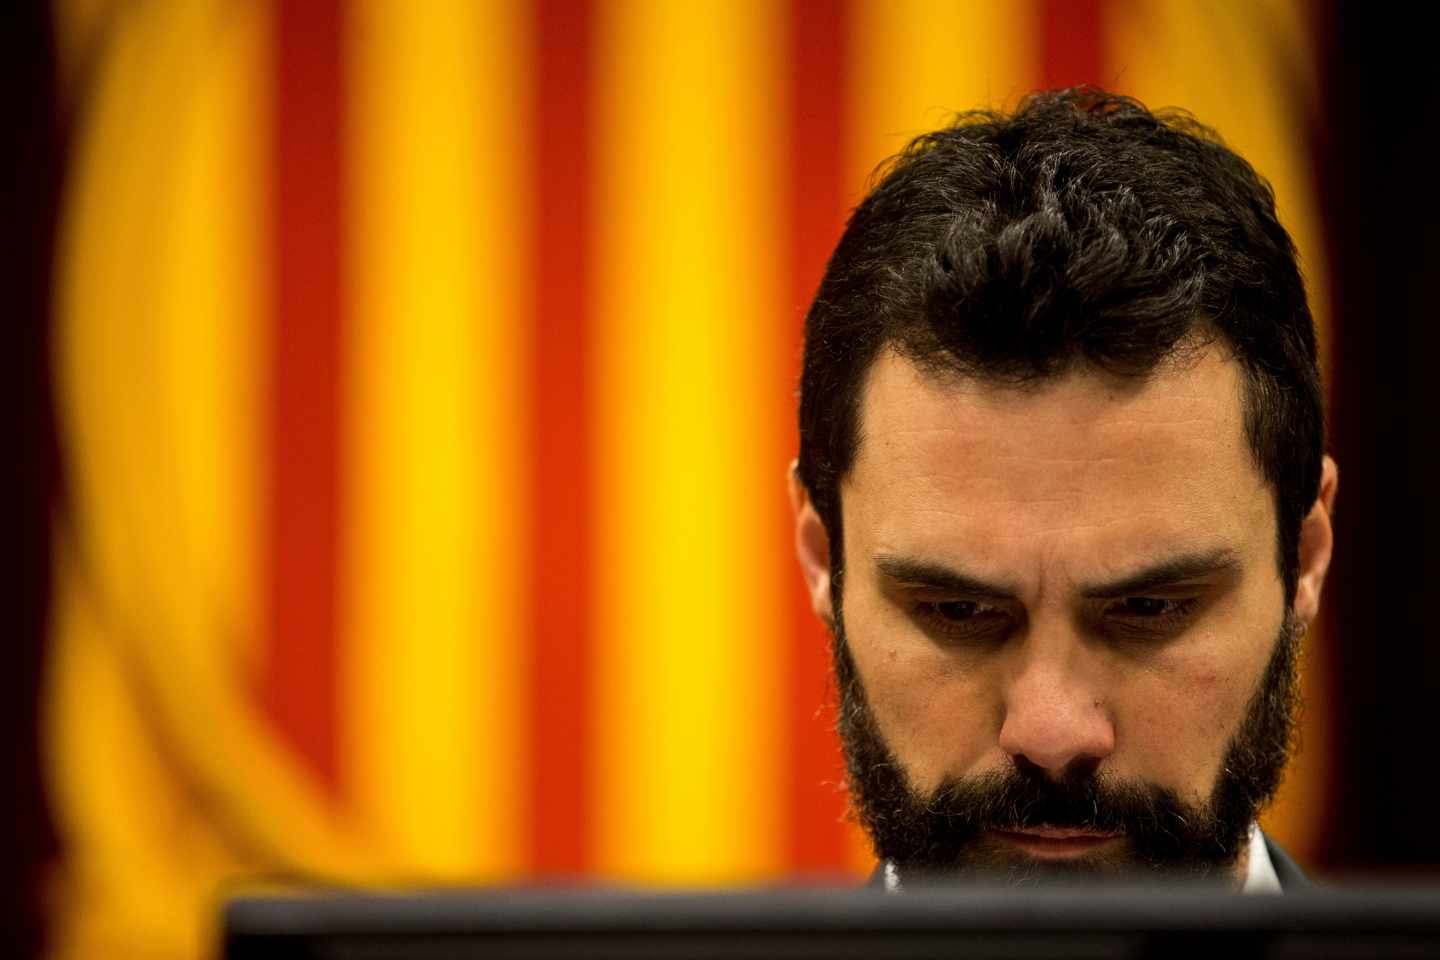 Torrent activa el calendario para ir a elecciones el 14 de febrero en Cataluña